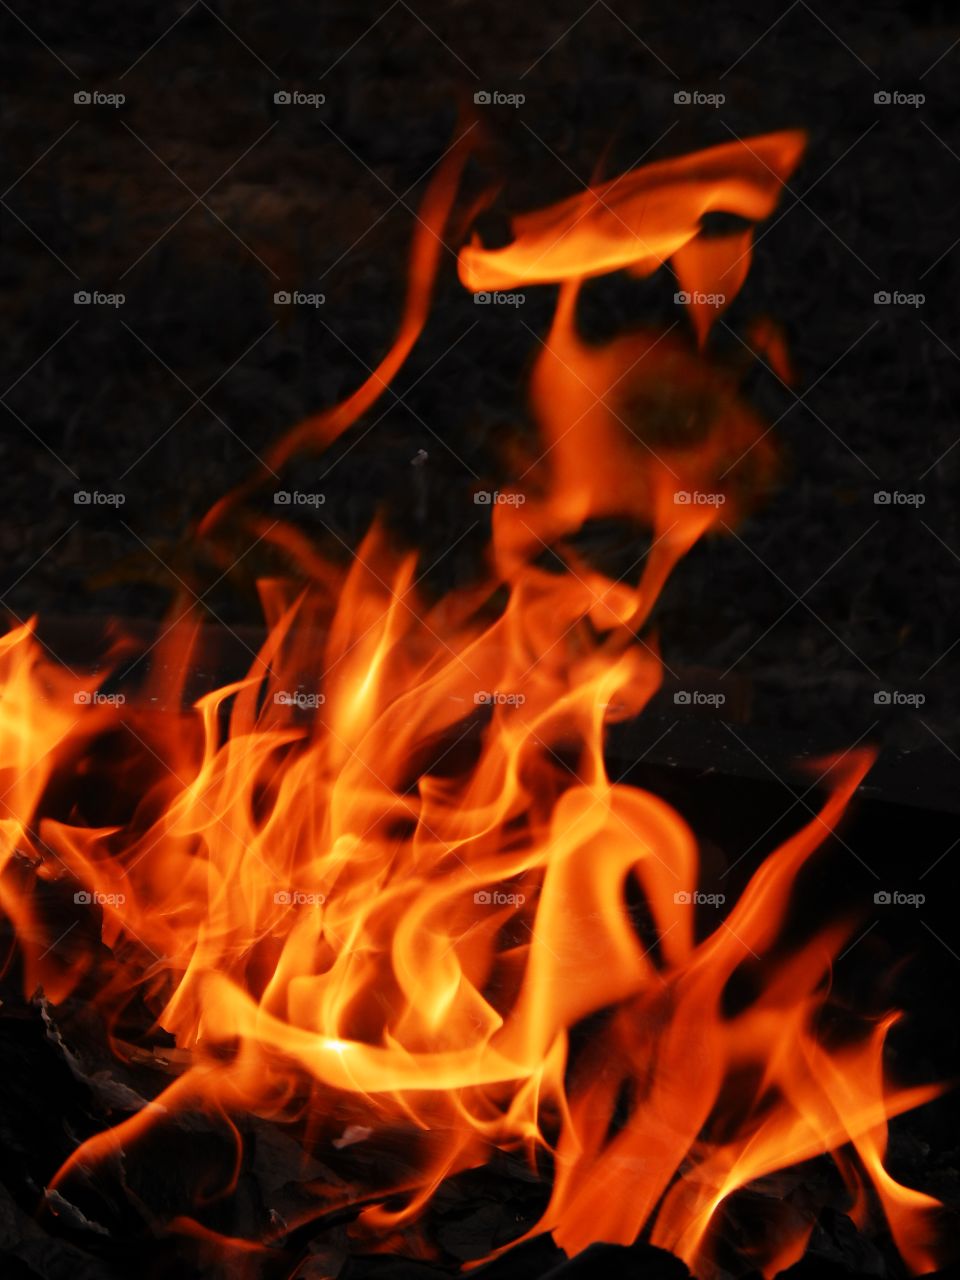 strange face seen in flames, fire